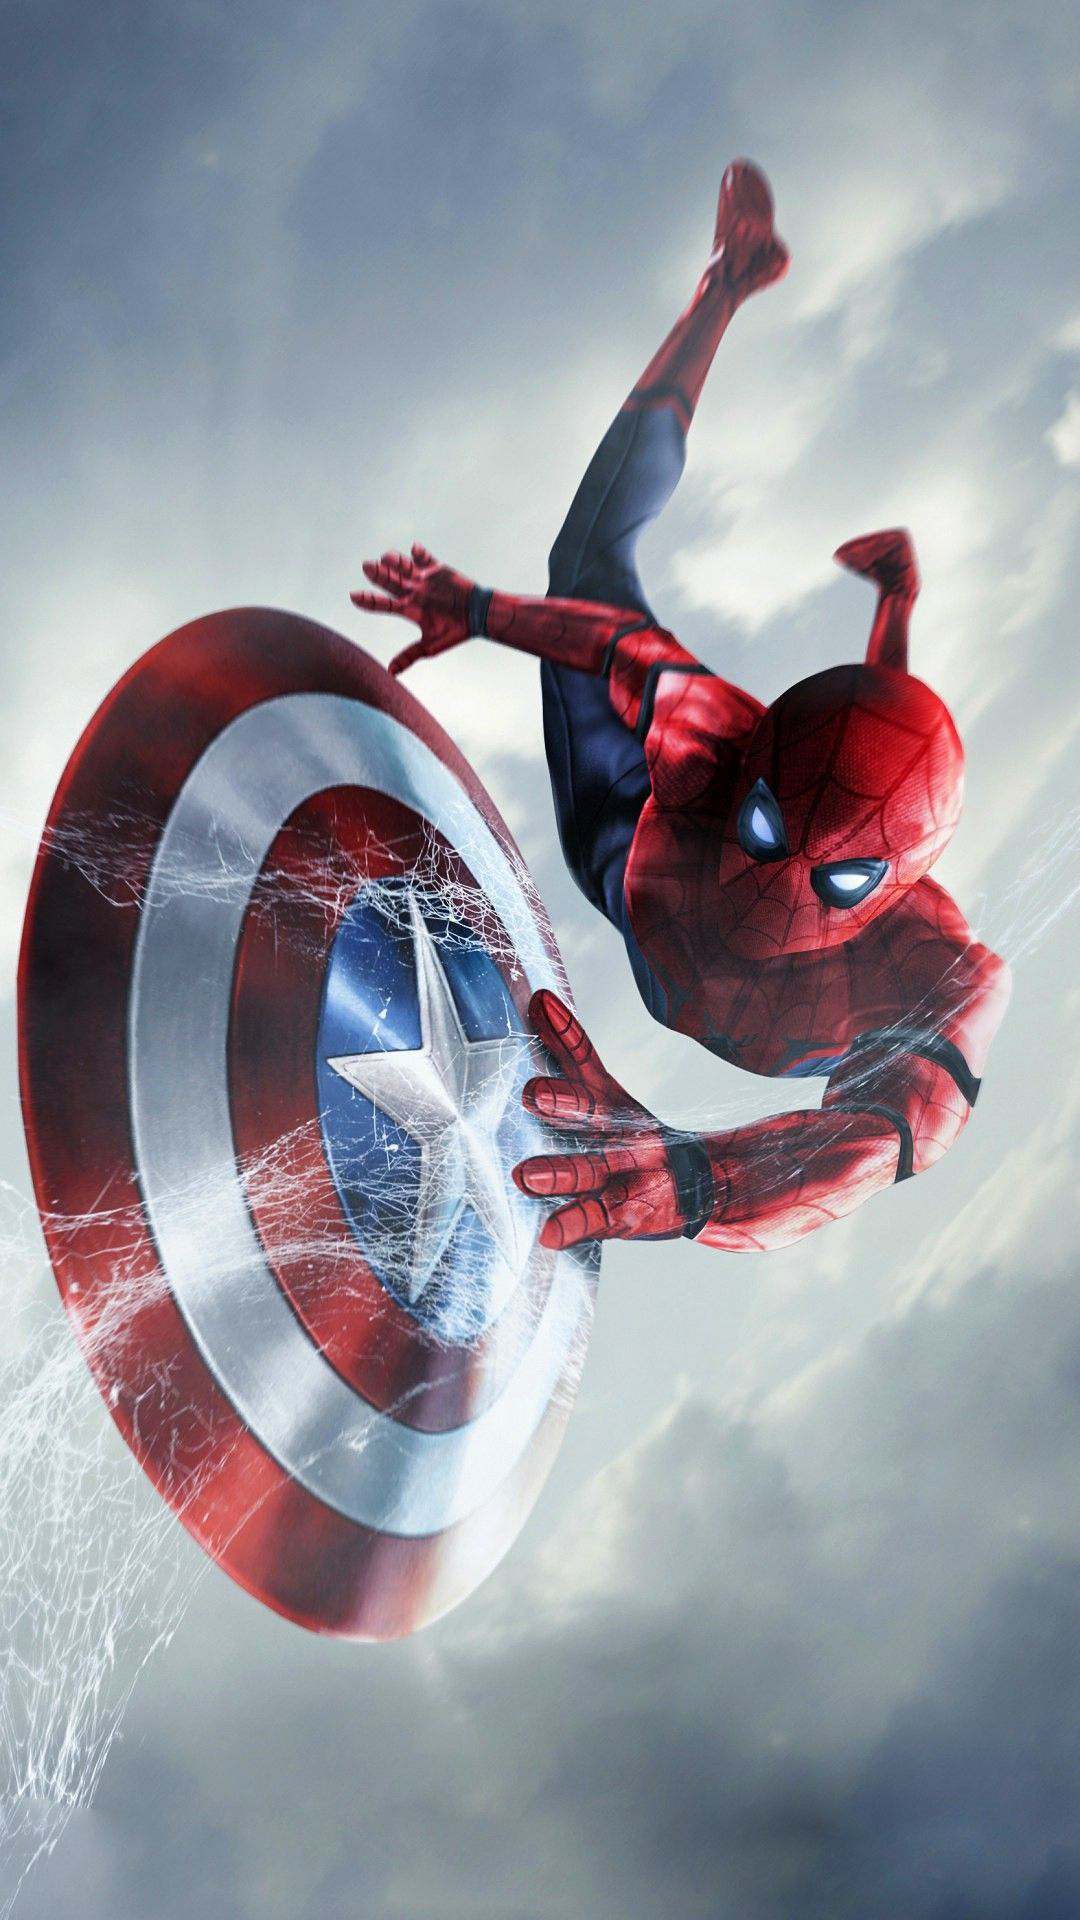 capitán américa fondo de pantalla,hombre araña,superhéroe,personaje de ficción,deporte extremo,capitan america